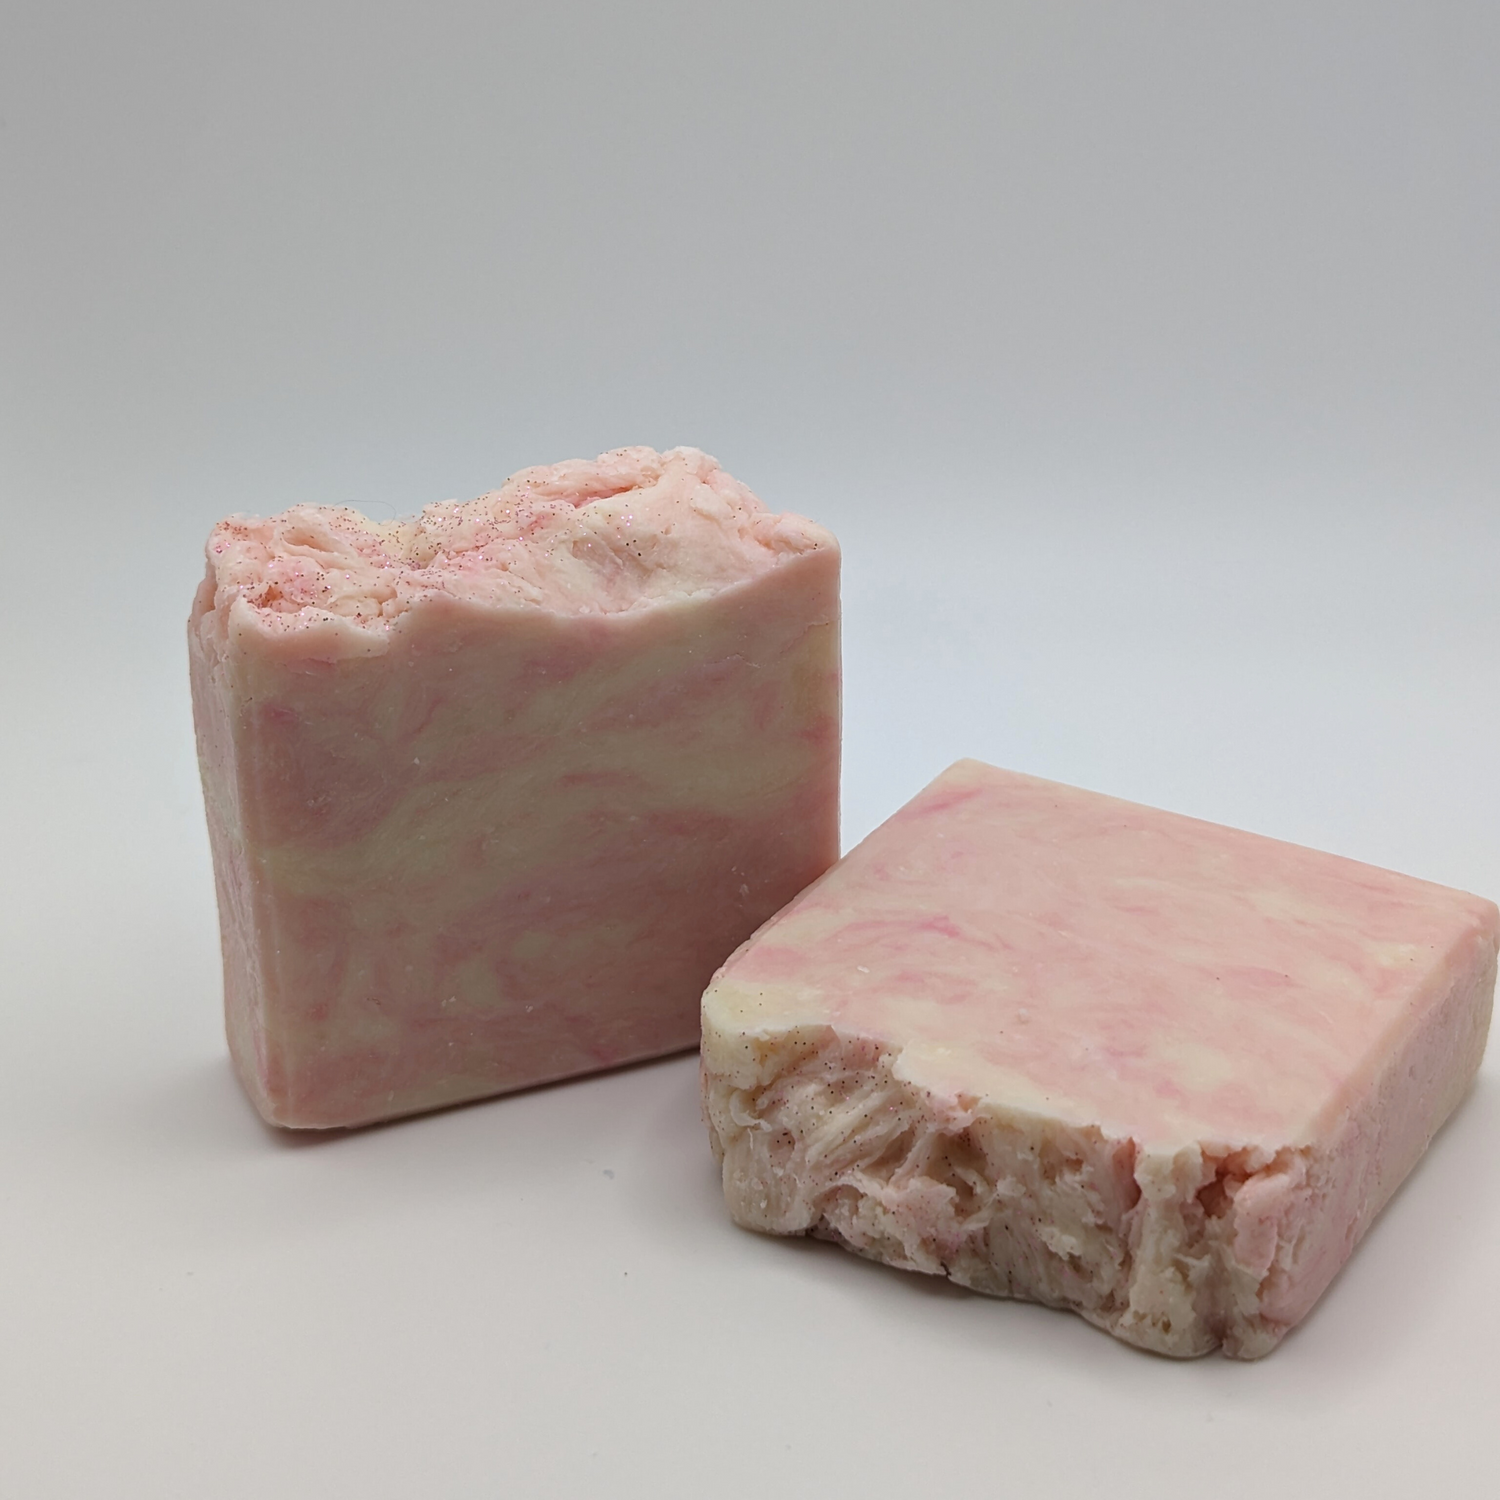 Pink Grapefruit Bar Soap